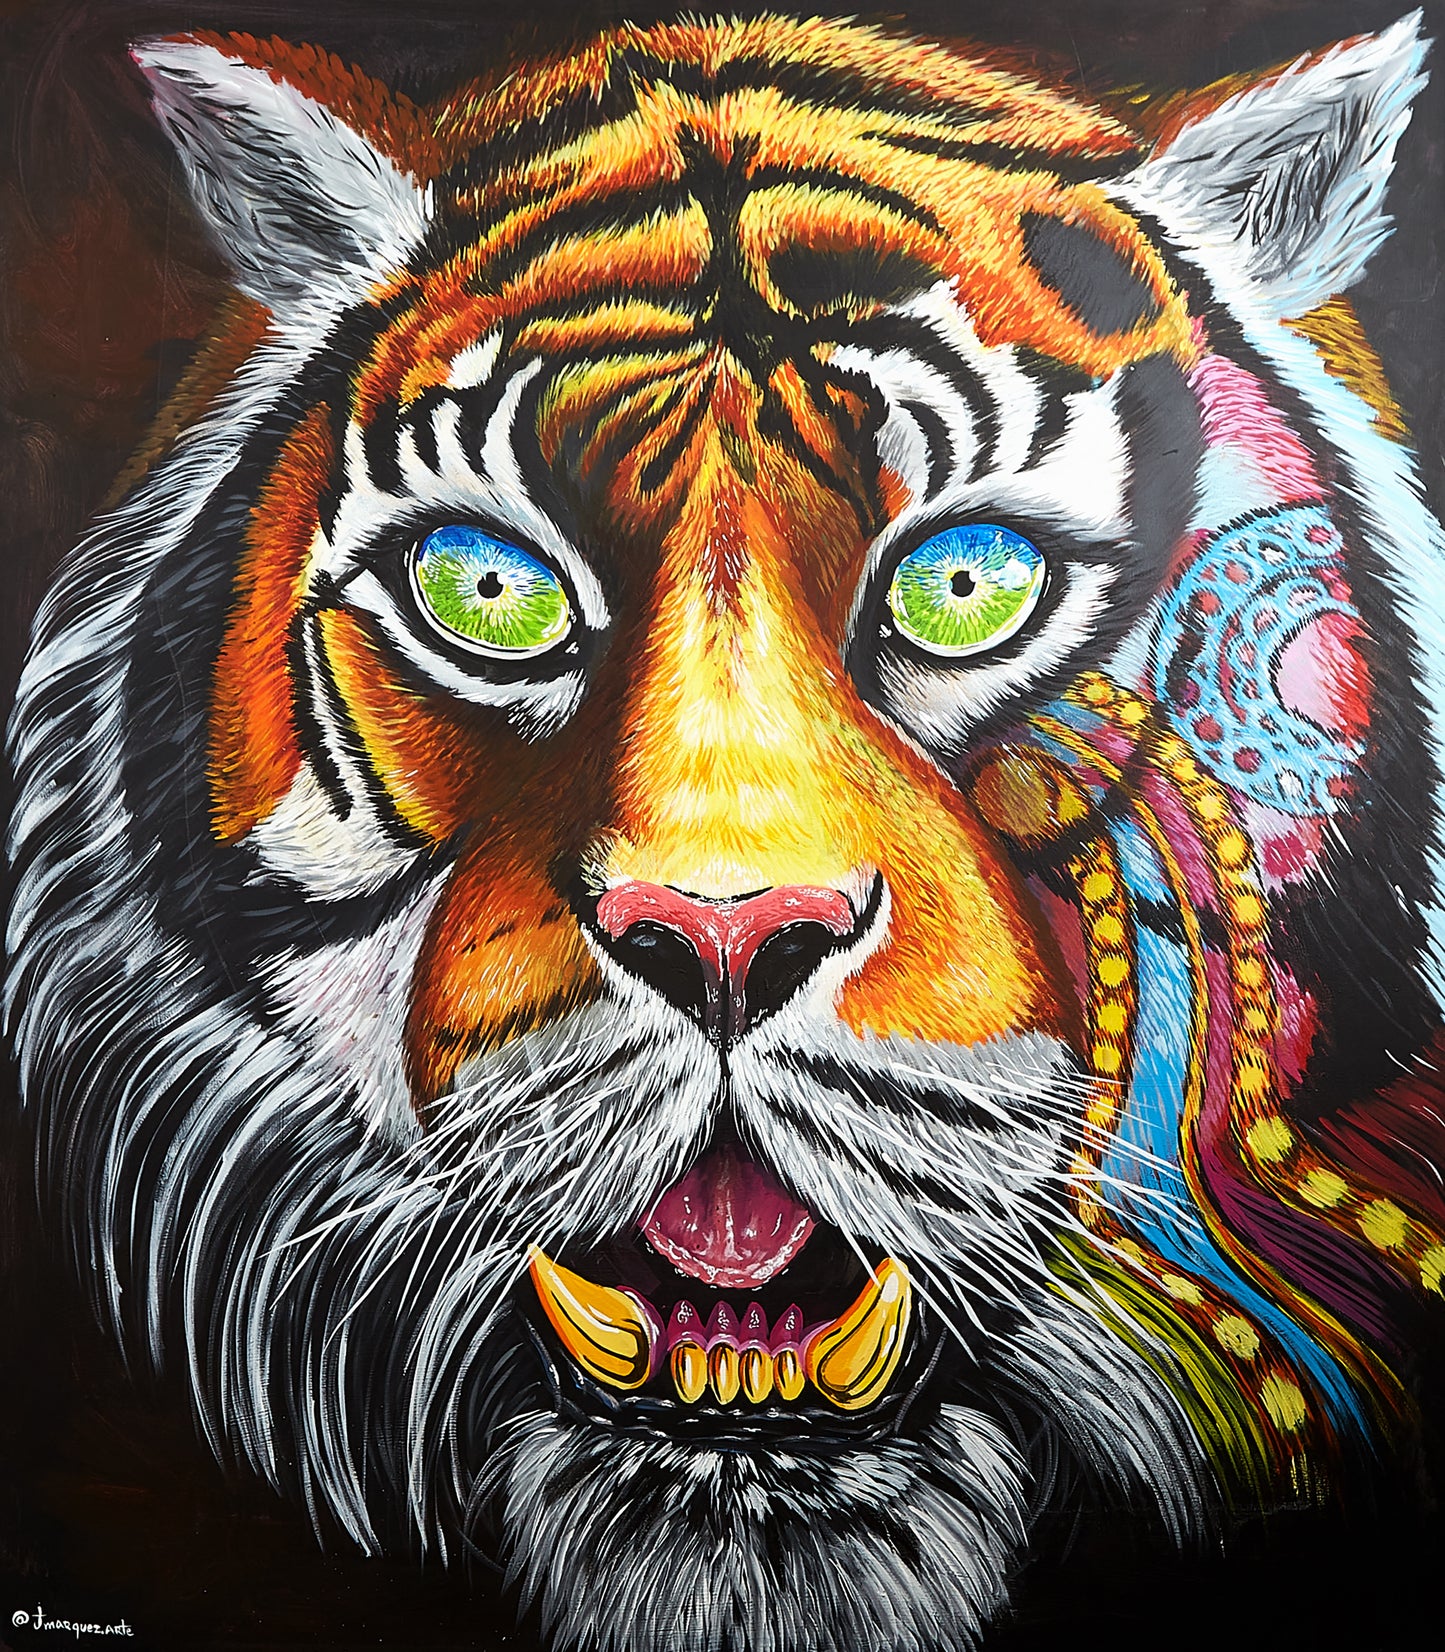 Tiger -“Grandeza y fortaleza”.